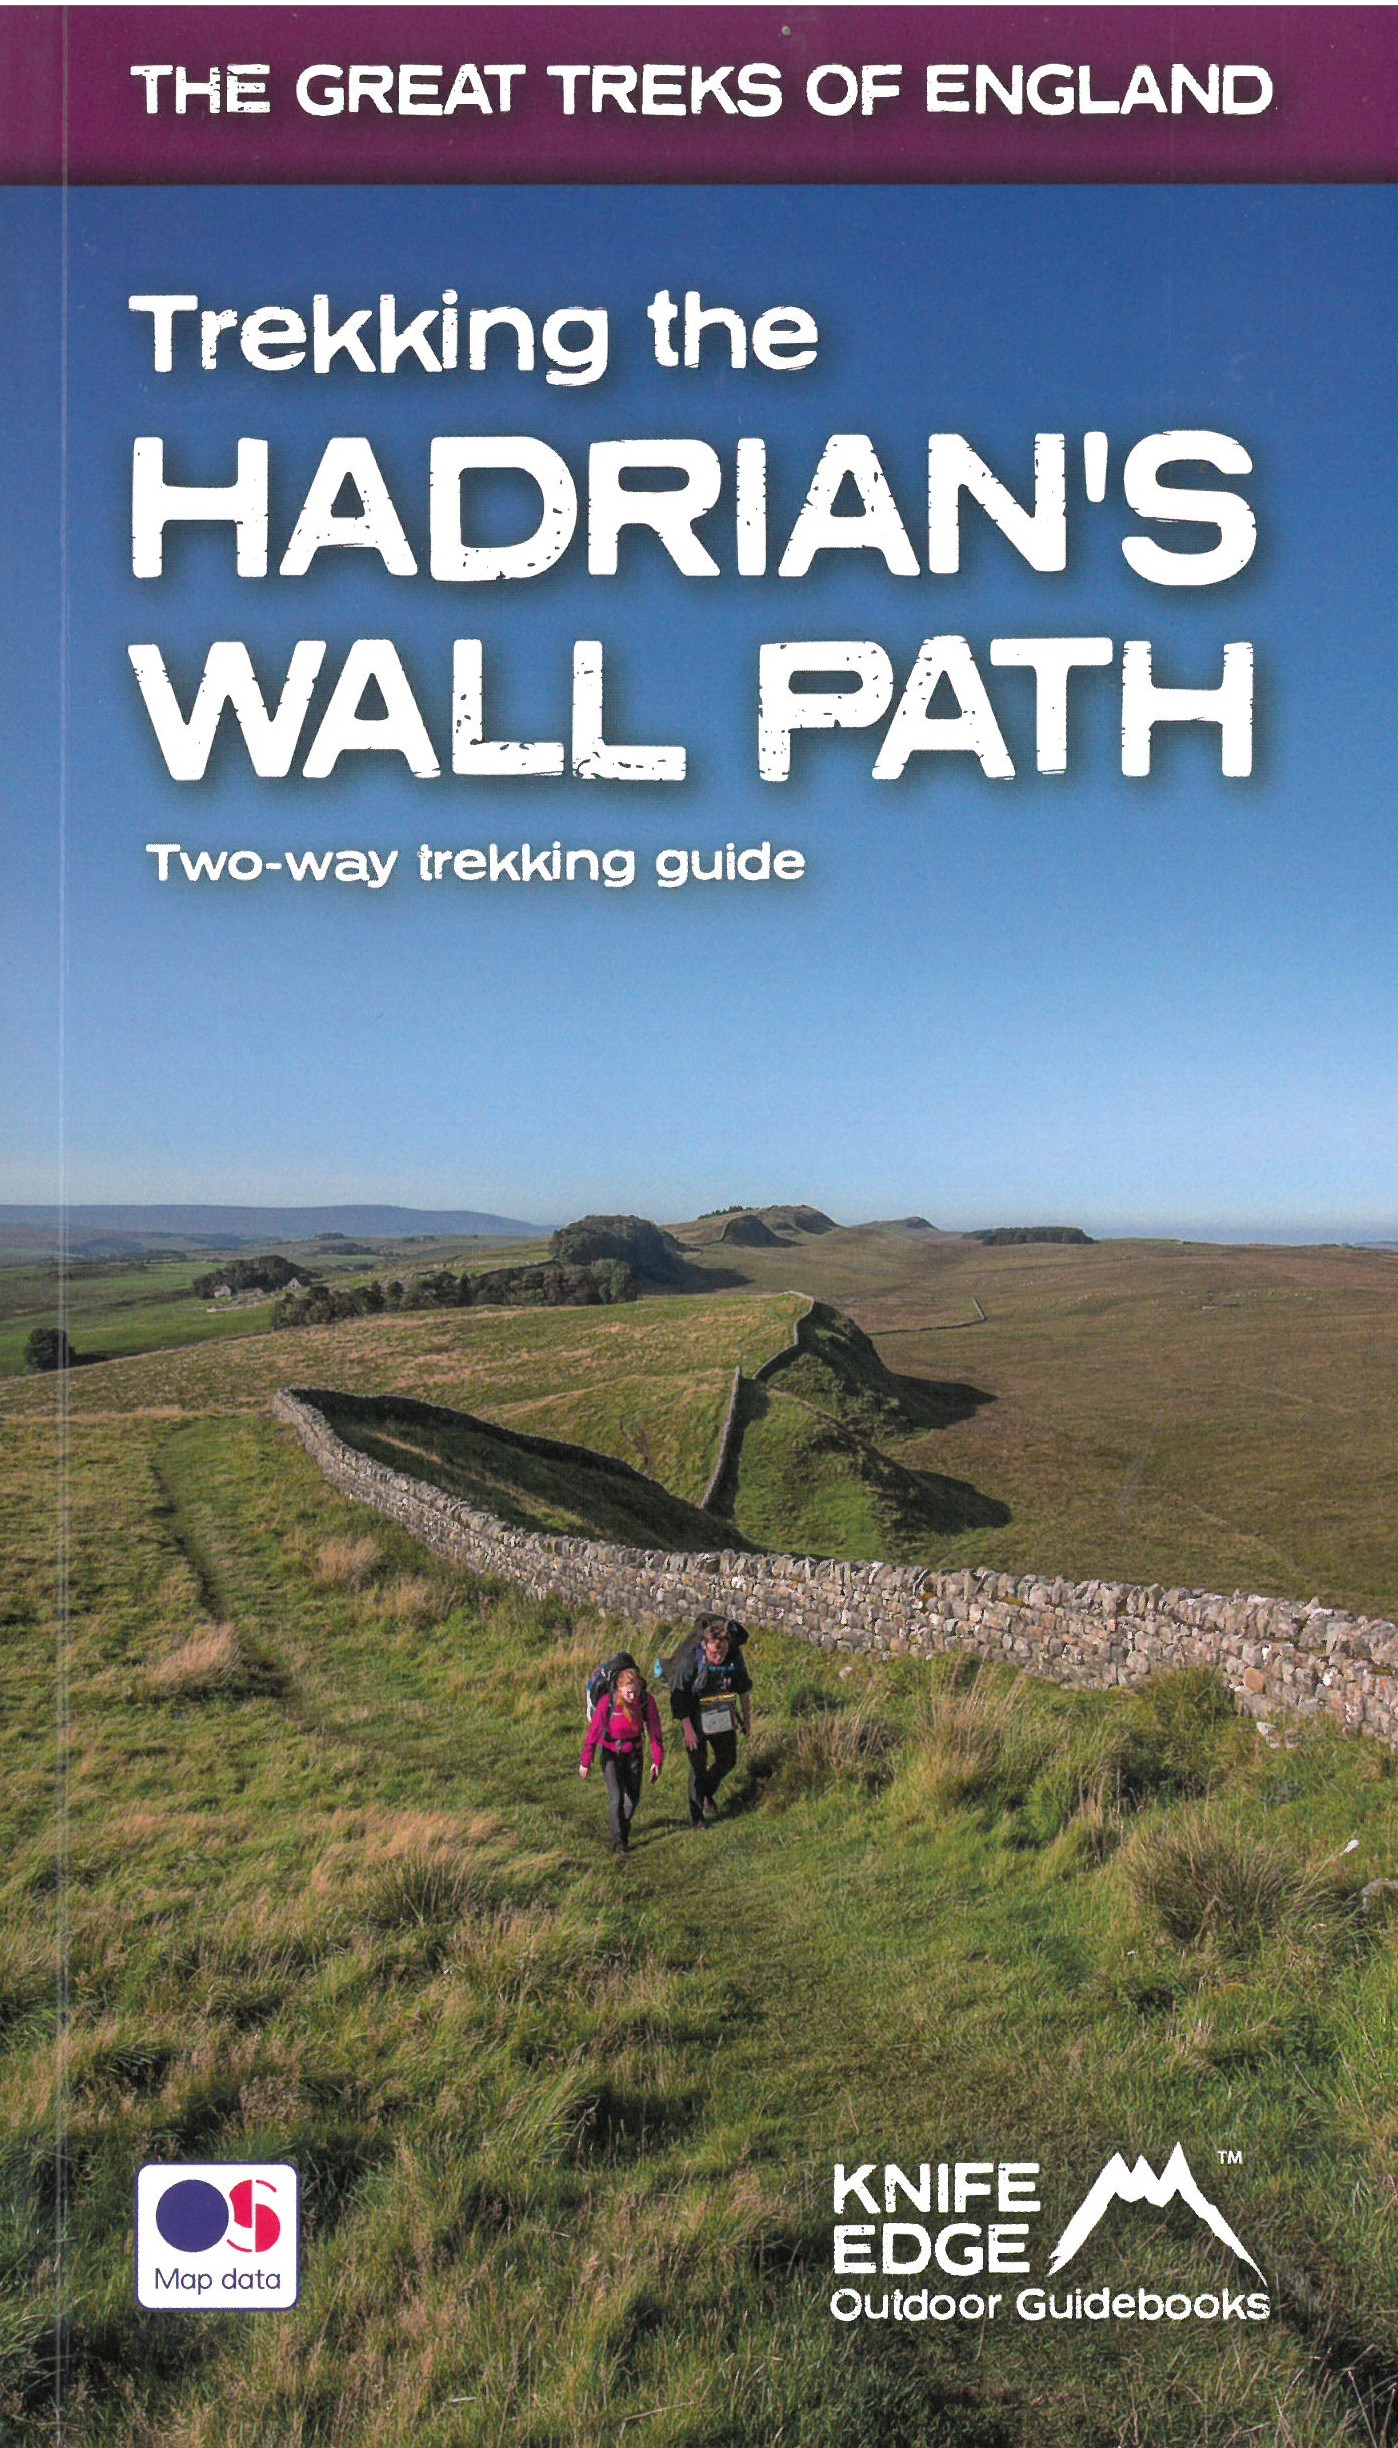 Hadrian's Wall path